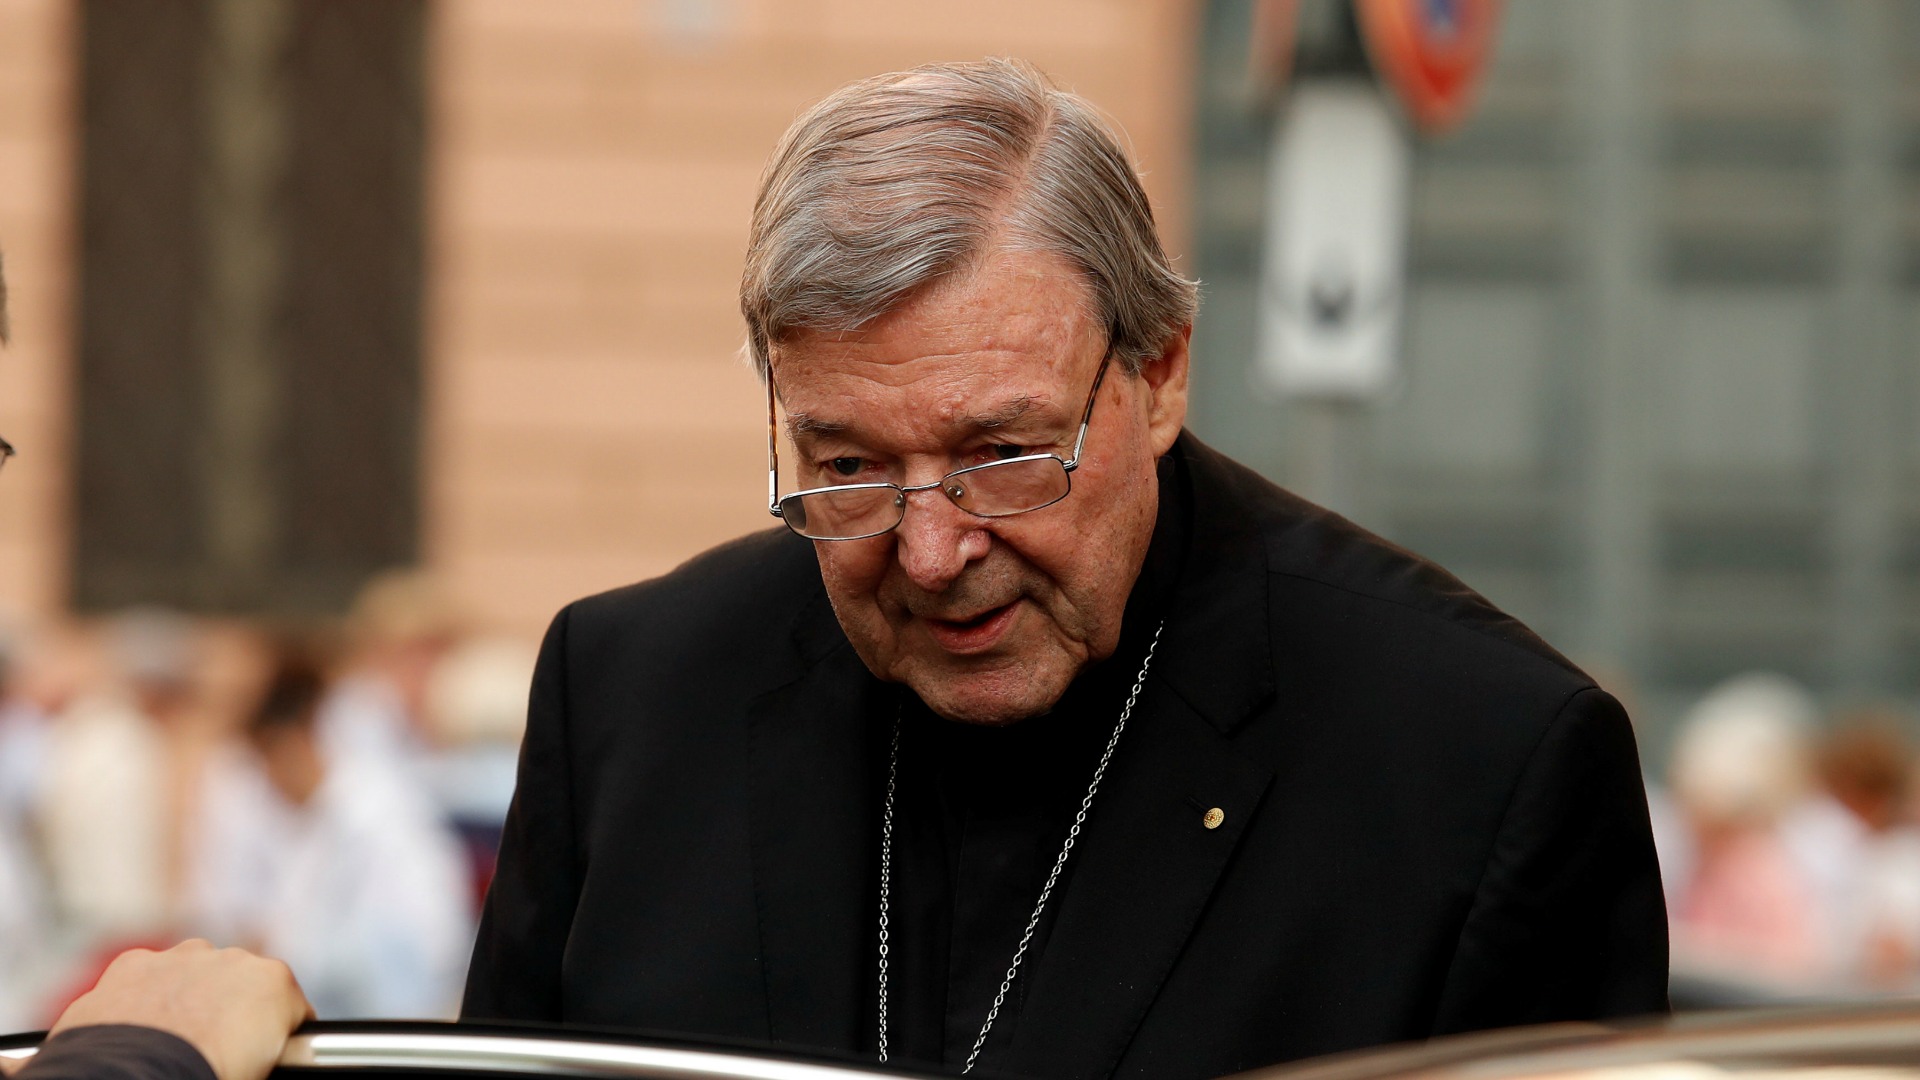 La iglesia australiana sale en defensa del cardenal acusado de abusos sexuales